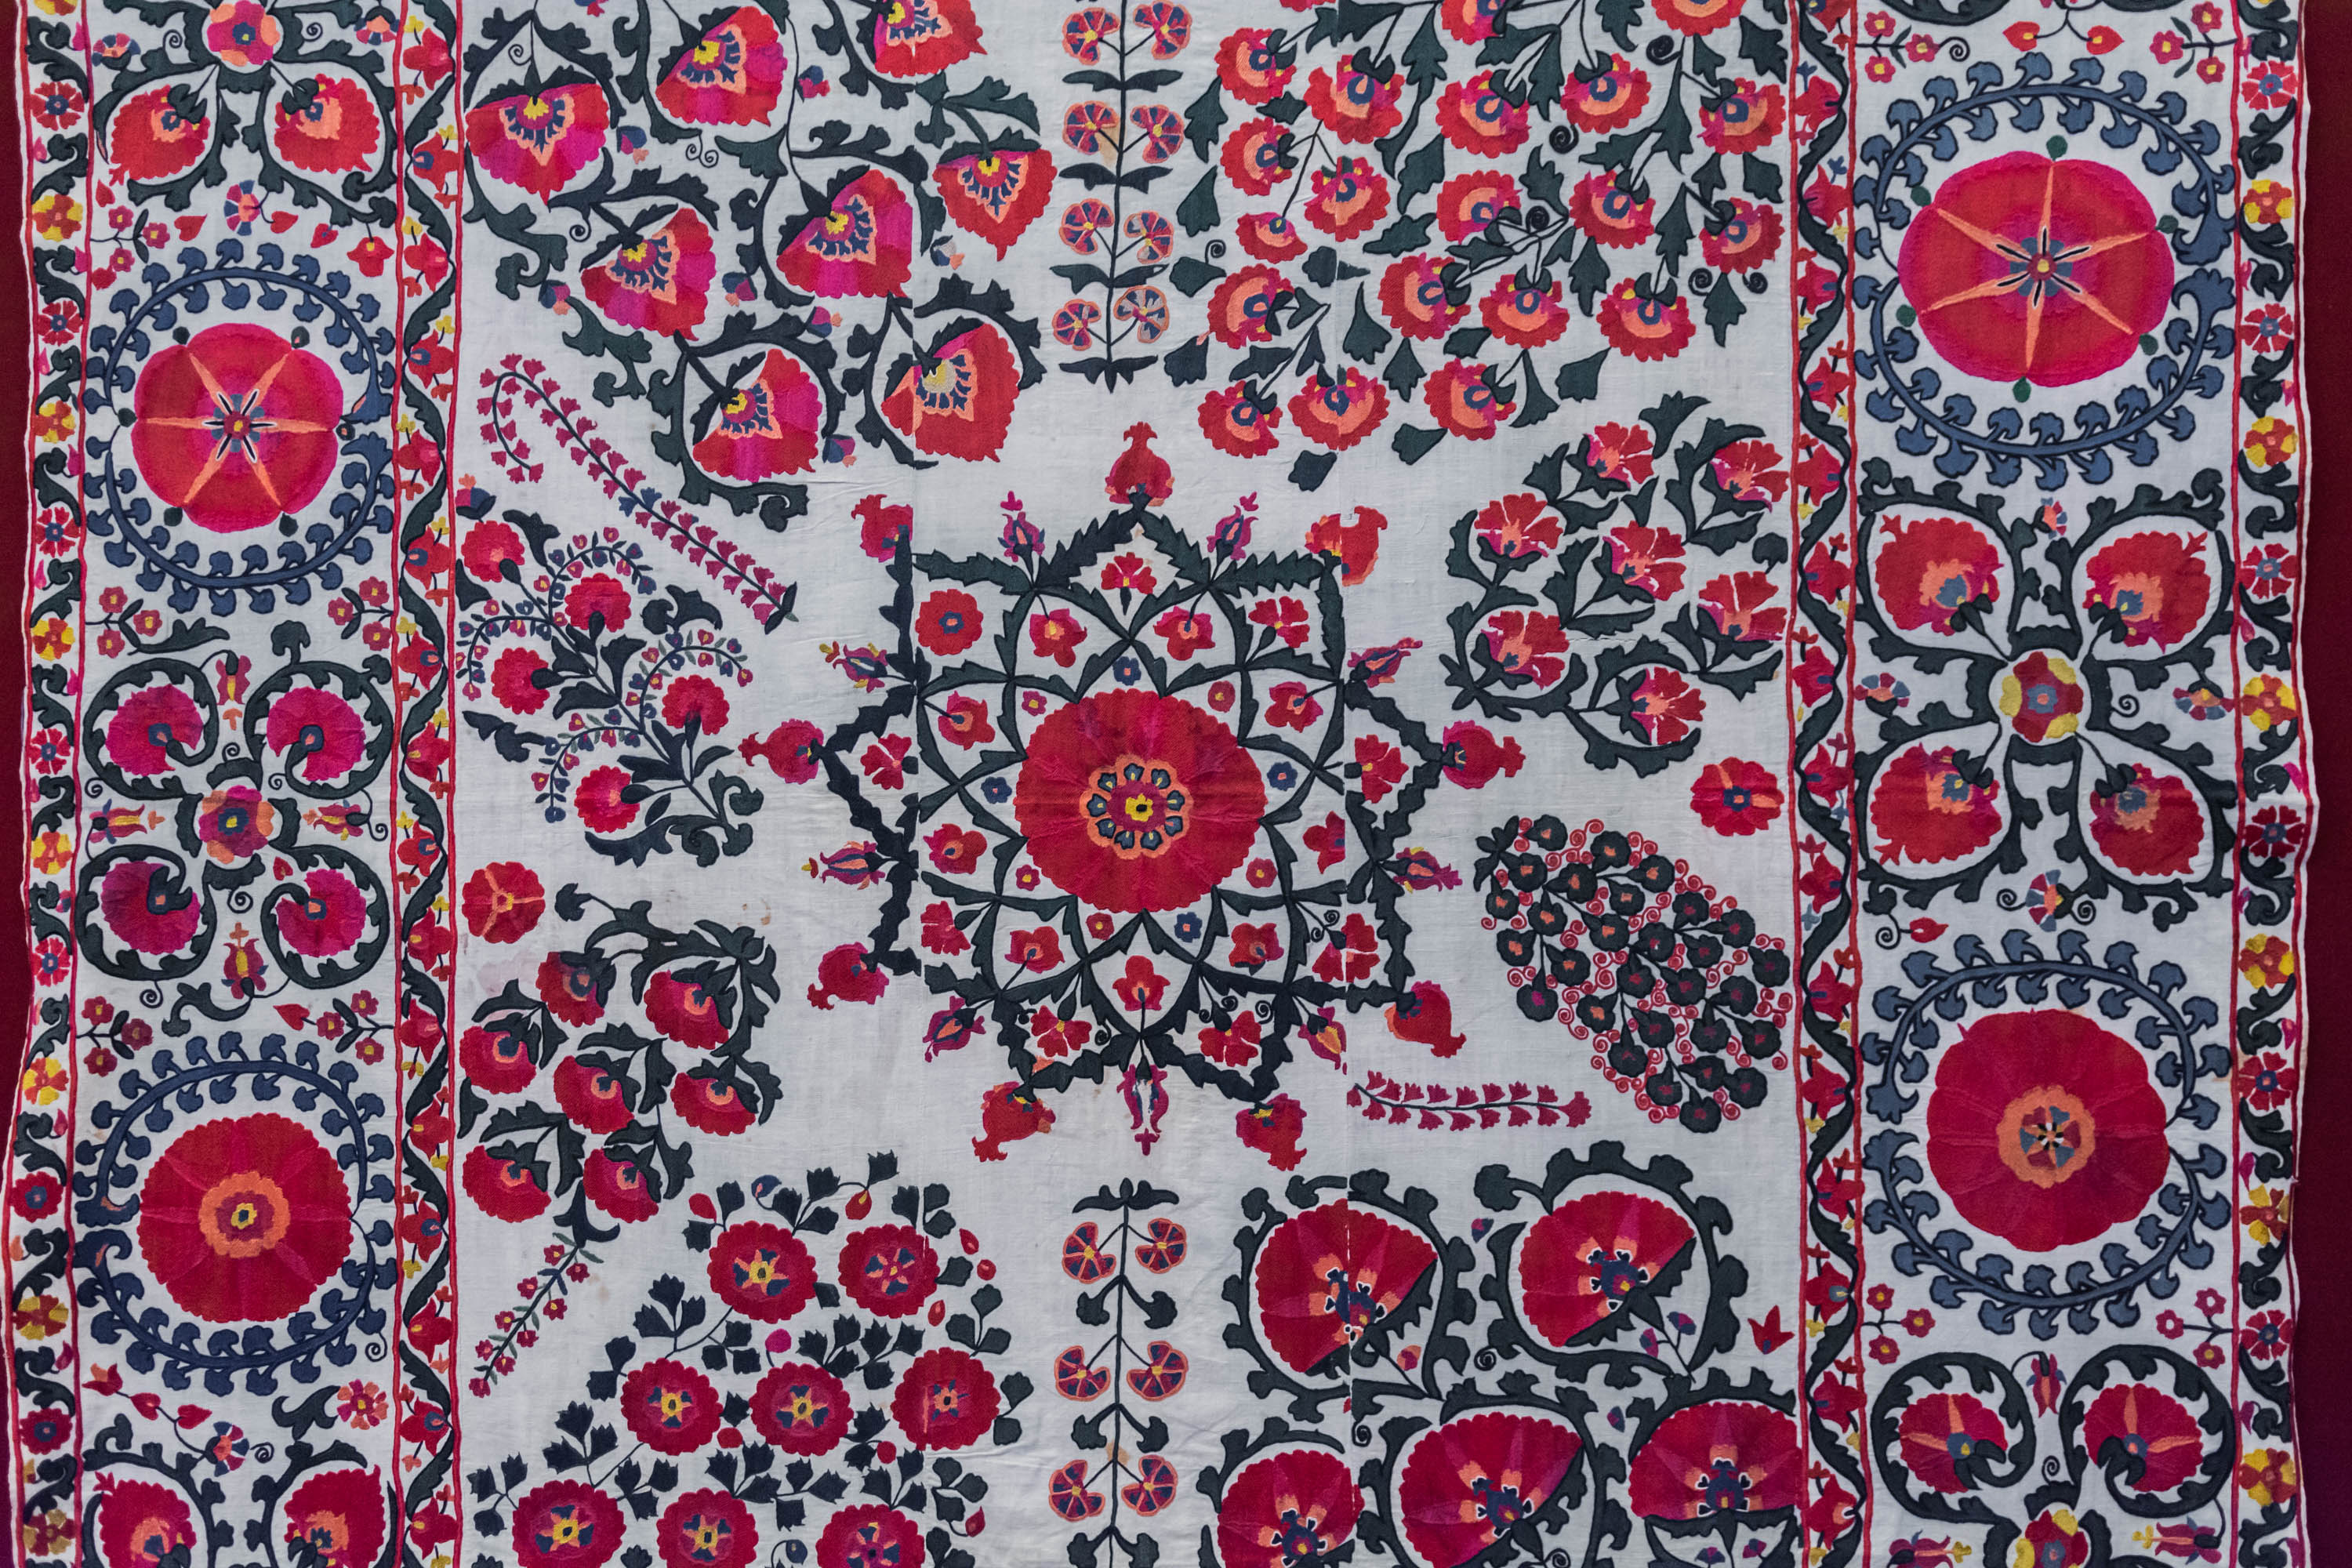 Шелковые нити Узбекистана — традиционные вышивки и ткани4